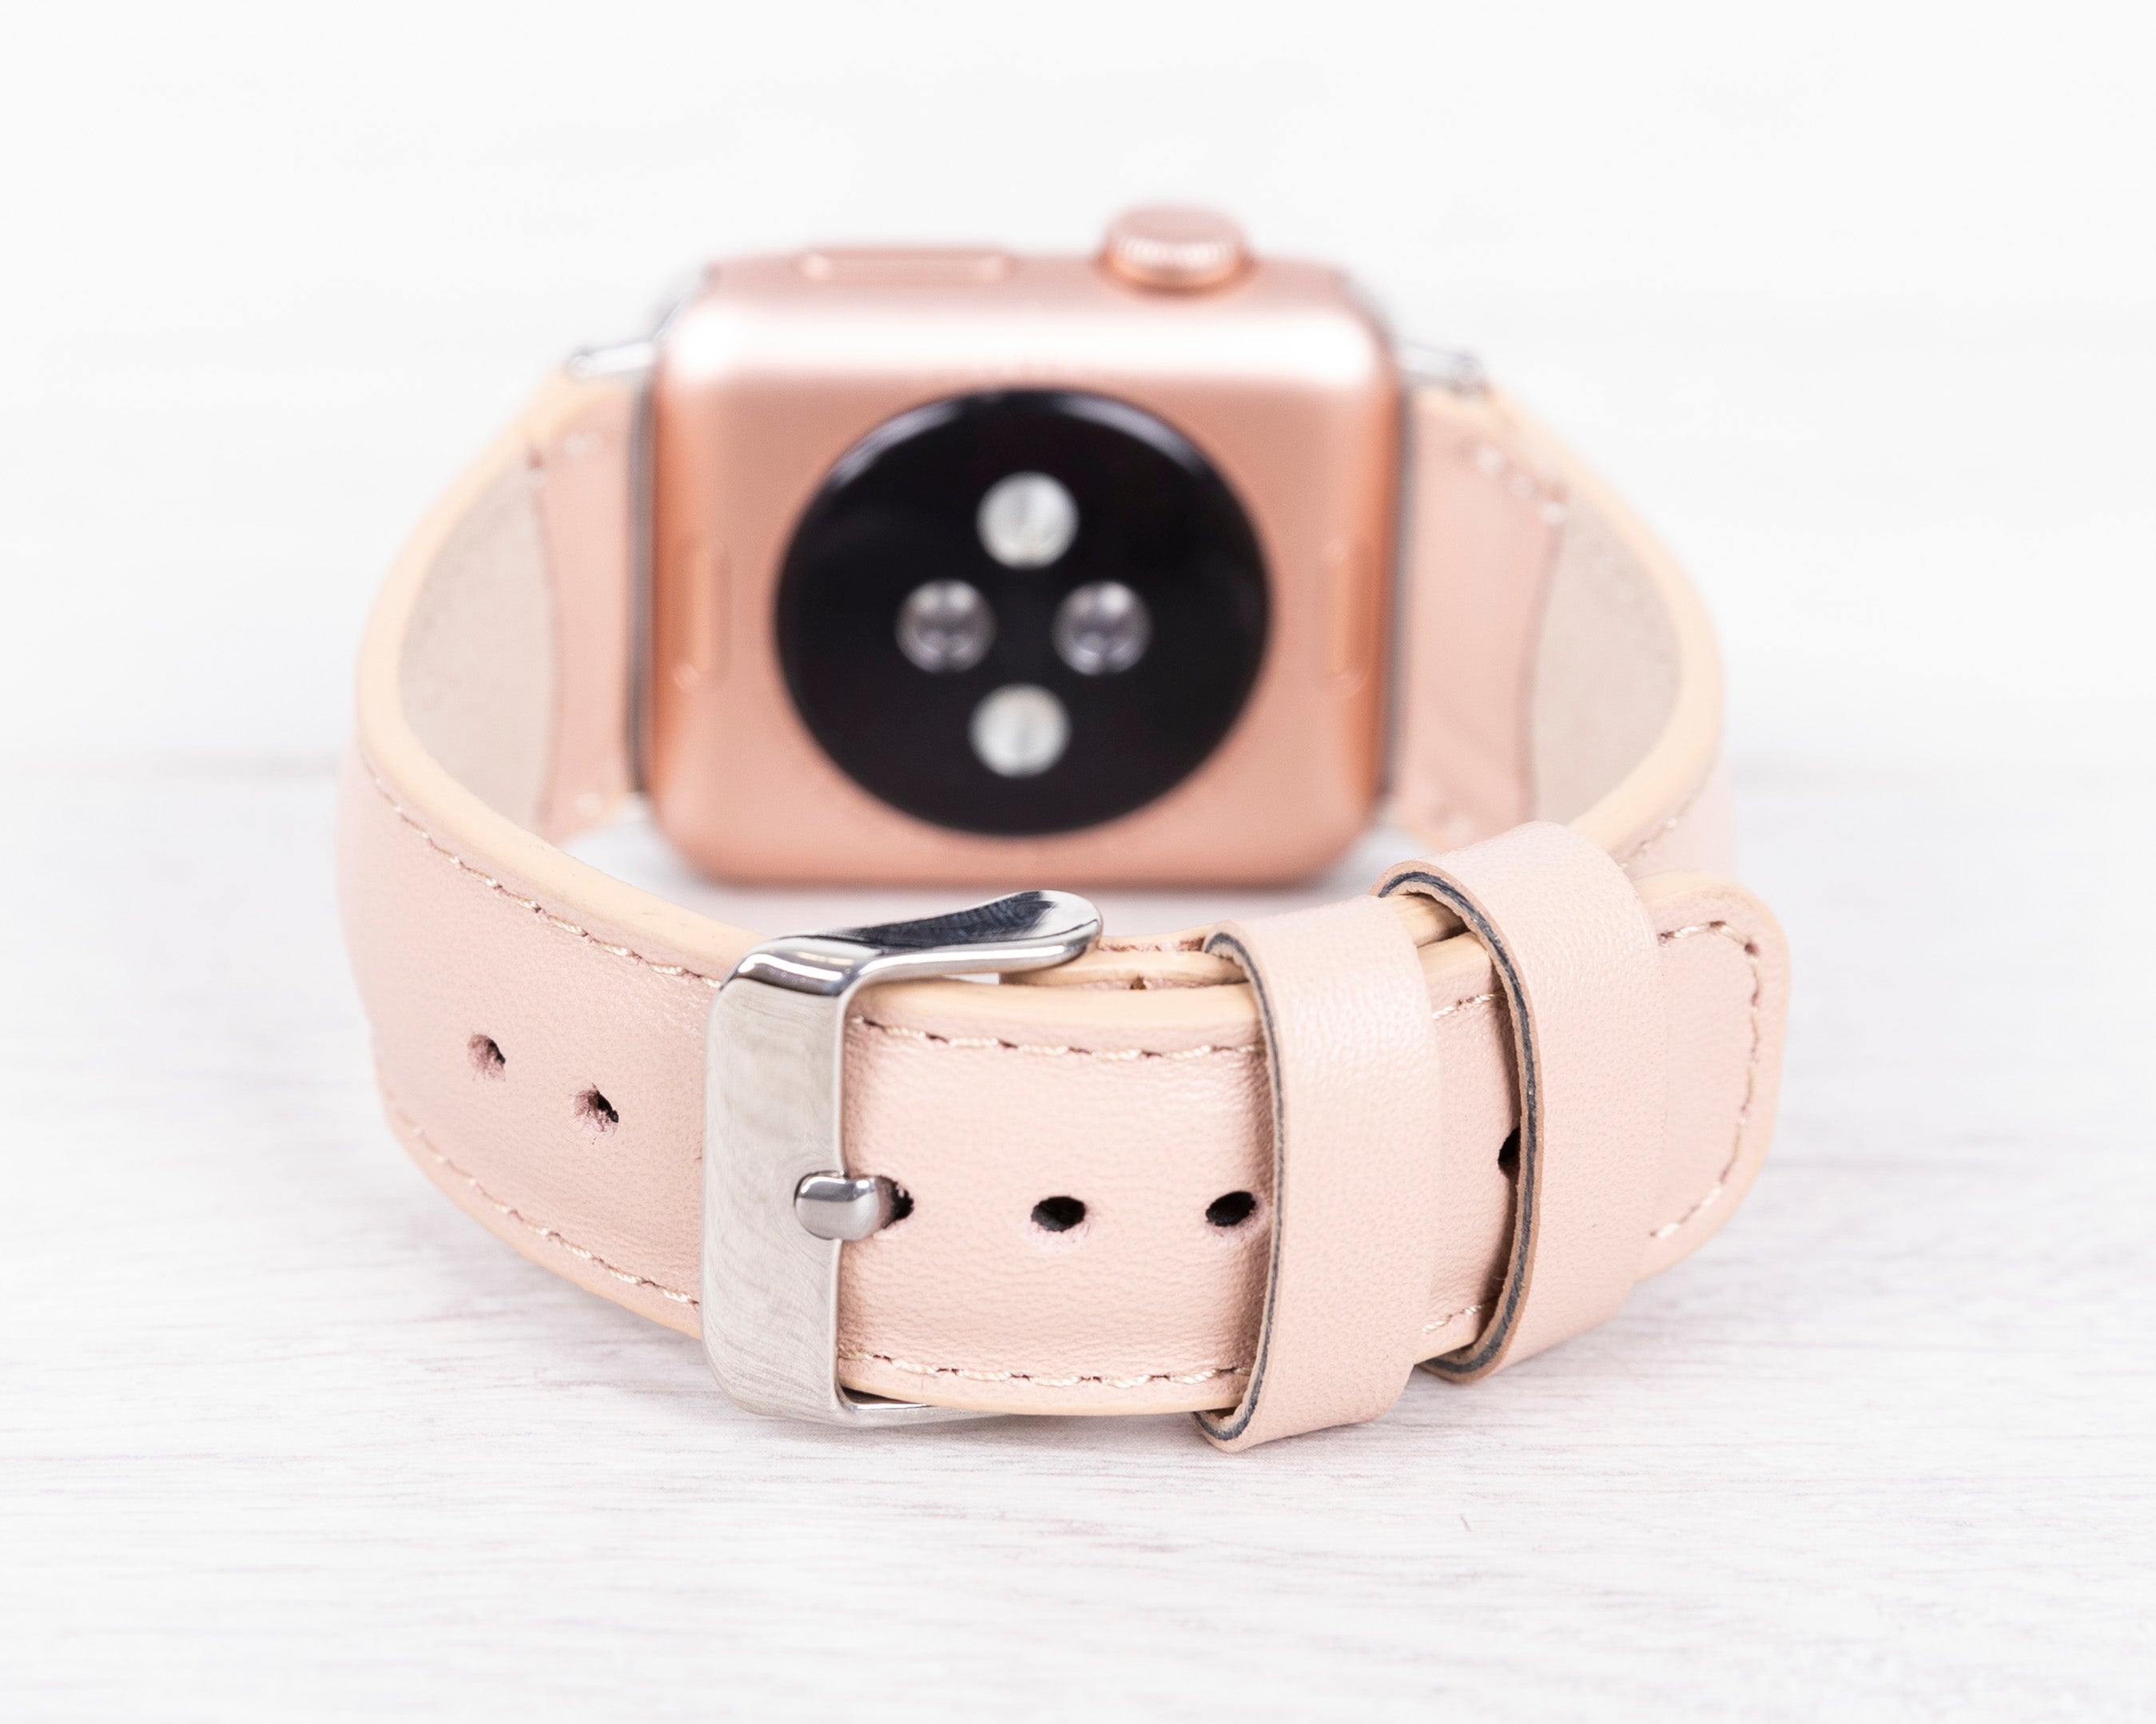 Handdn Light Pink Calfskin Apple Watch Band – Waves Texture